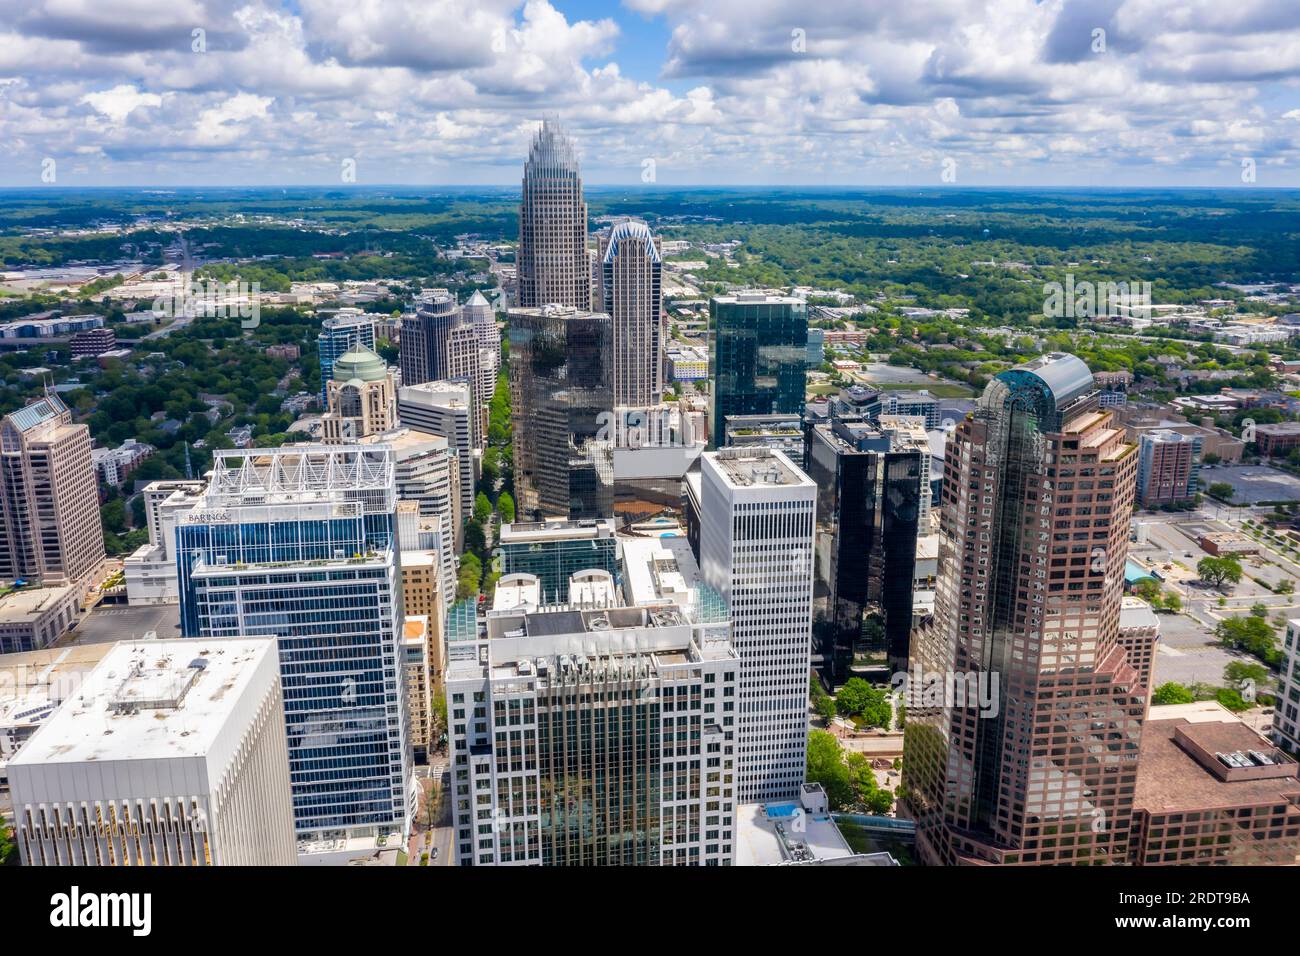 26 aprile 2020, Charlotte, Carolina del Nord, USA: Charlotte è la città più popolosa dello stato americano della Carolina del Nord. Situato nel Piemonte, IT Foto Stock